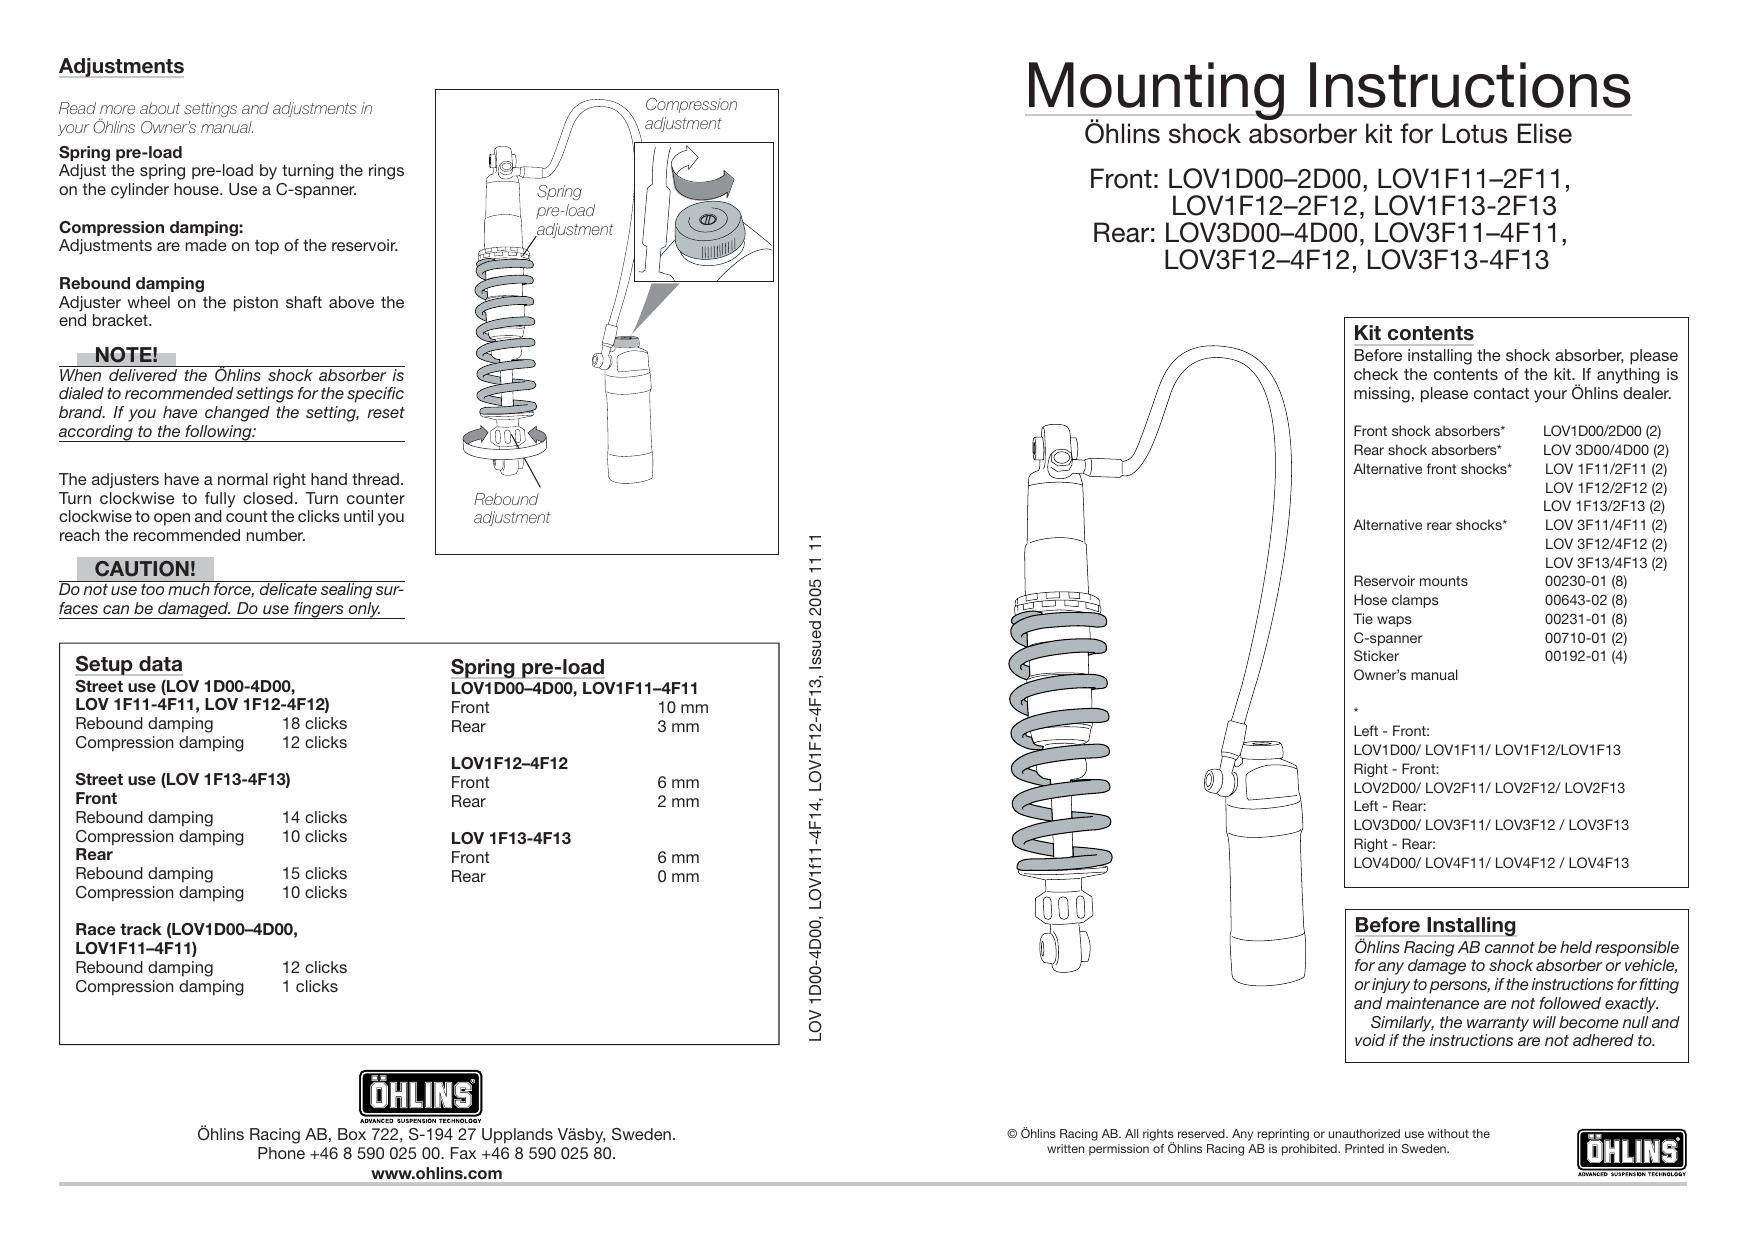 ohlins-shock-absorber-kit-for-lotus-elise-owners-manual.pdf